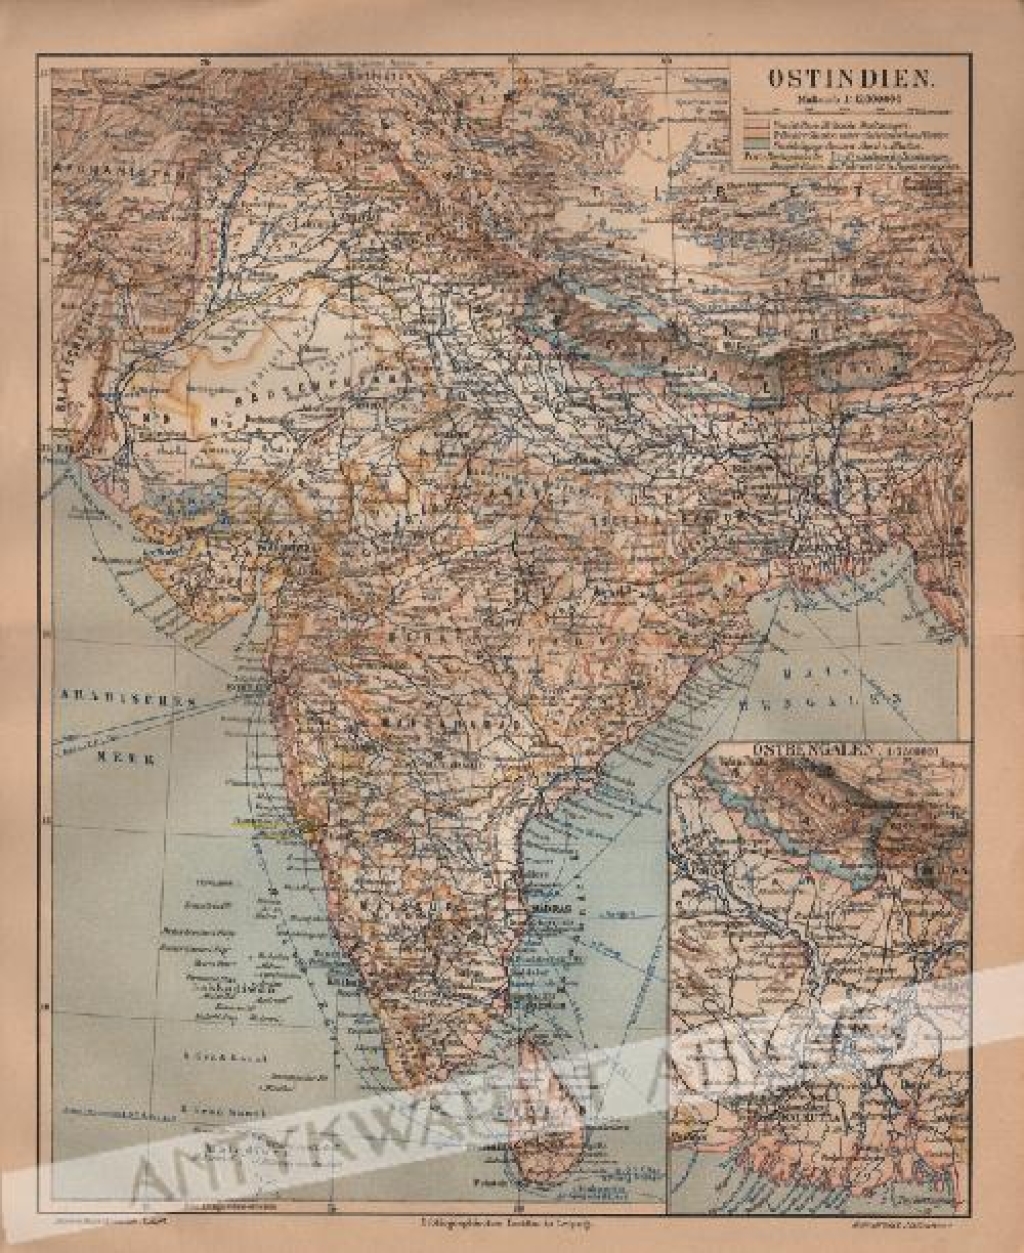 [mapa, 1906] Ostindien [Indie]